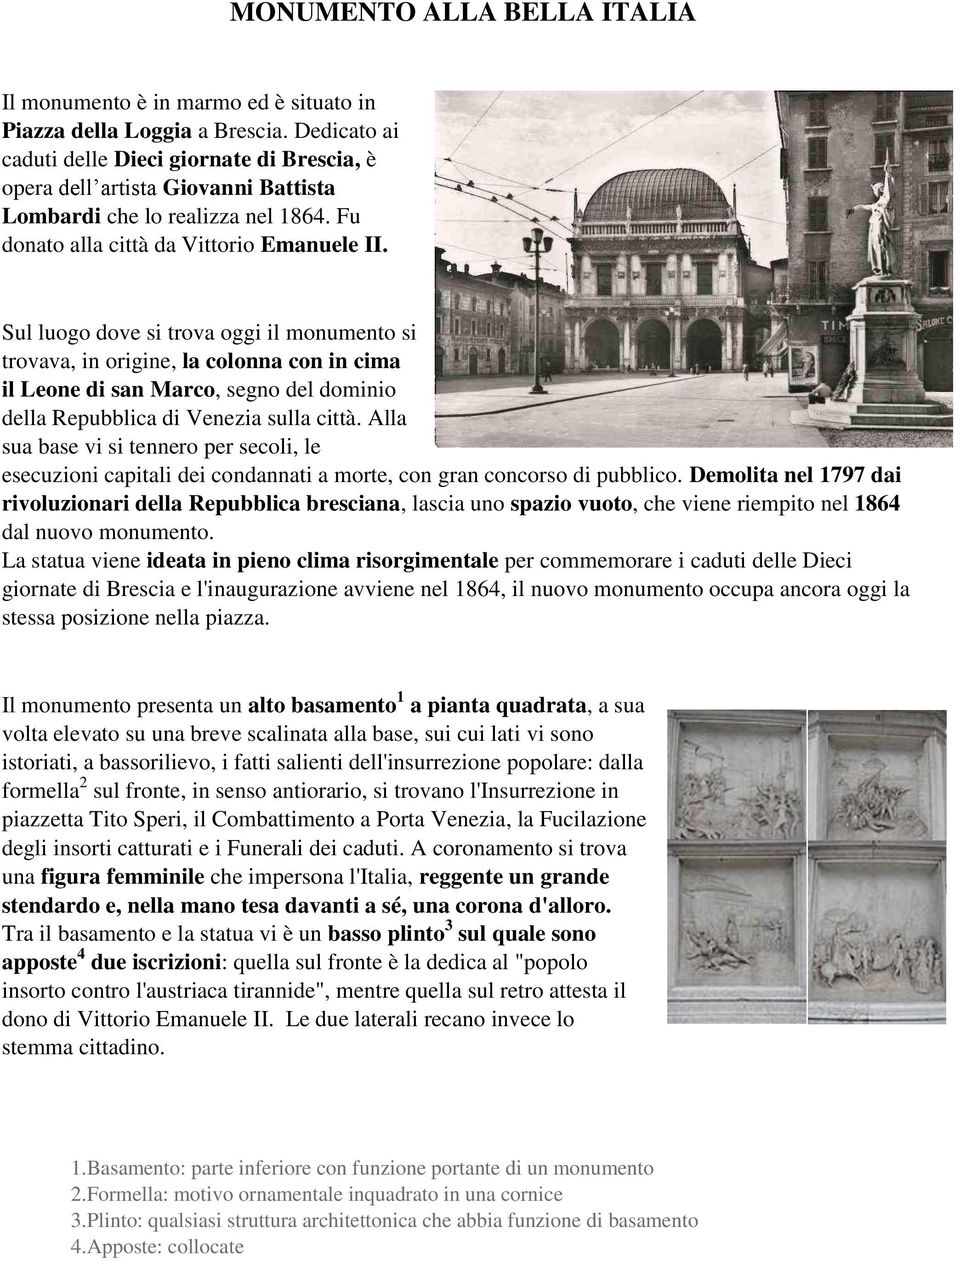 Sul luogo dove si trova oggi il monumento si trovava, in origine, la colonna con in cima il Leone di san Marco, segno del dominio della Repubblica di Venezia sulla città.